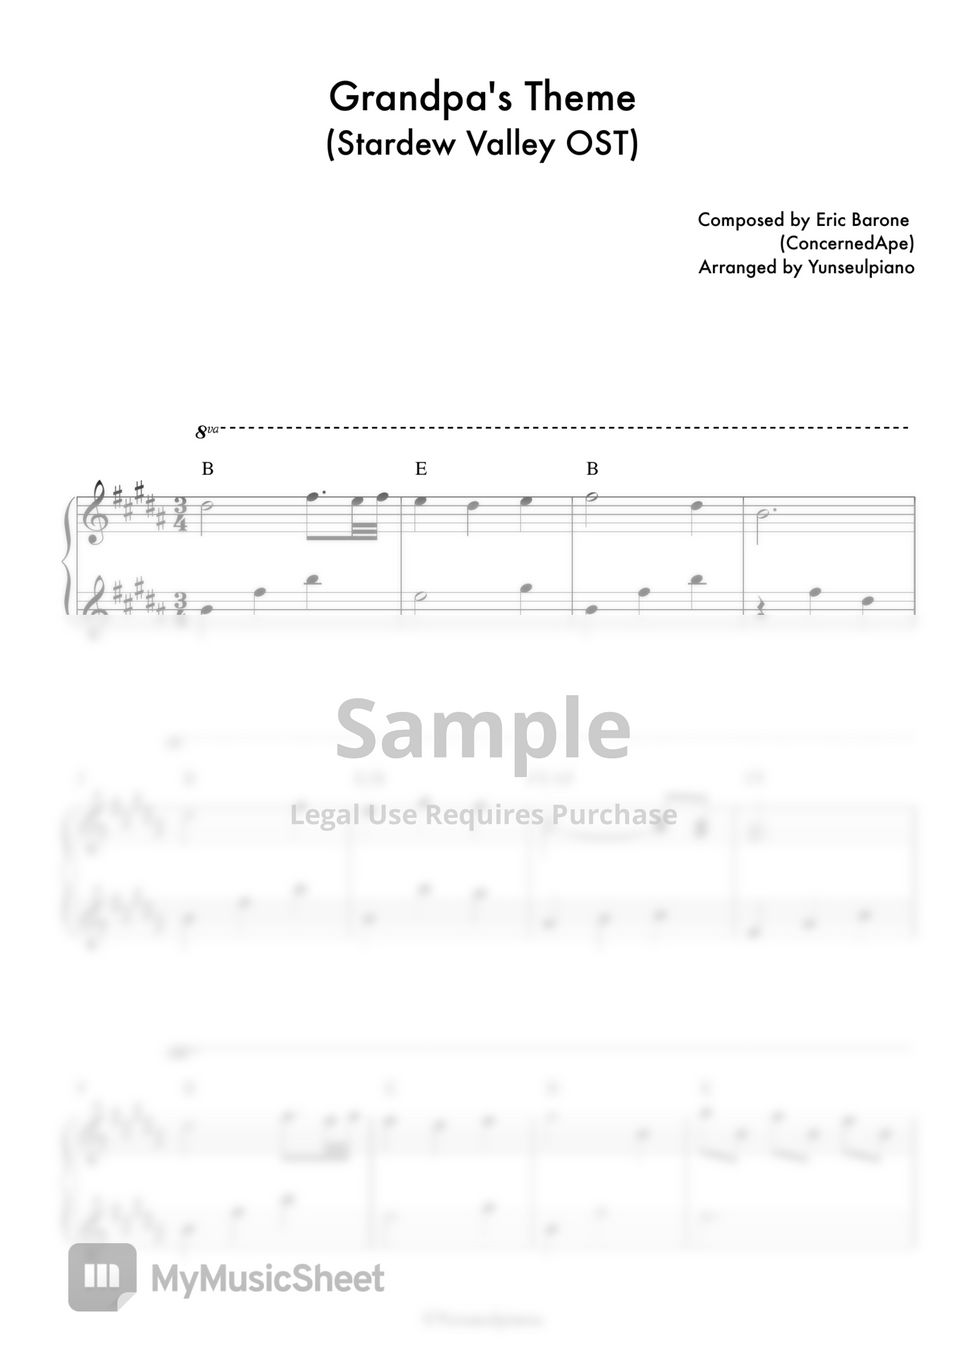 Stardew Valley OST - Grandpa's Theme (Piano Ver.) by Yunseulpiano